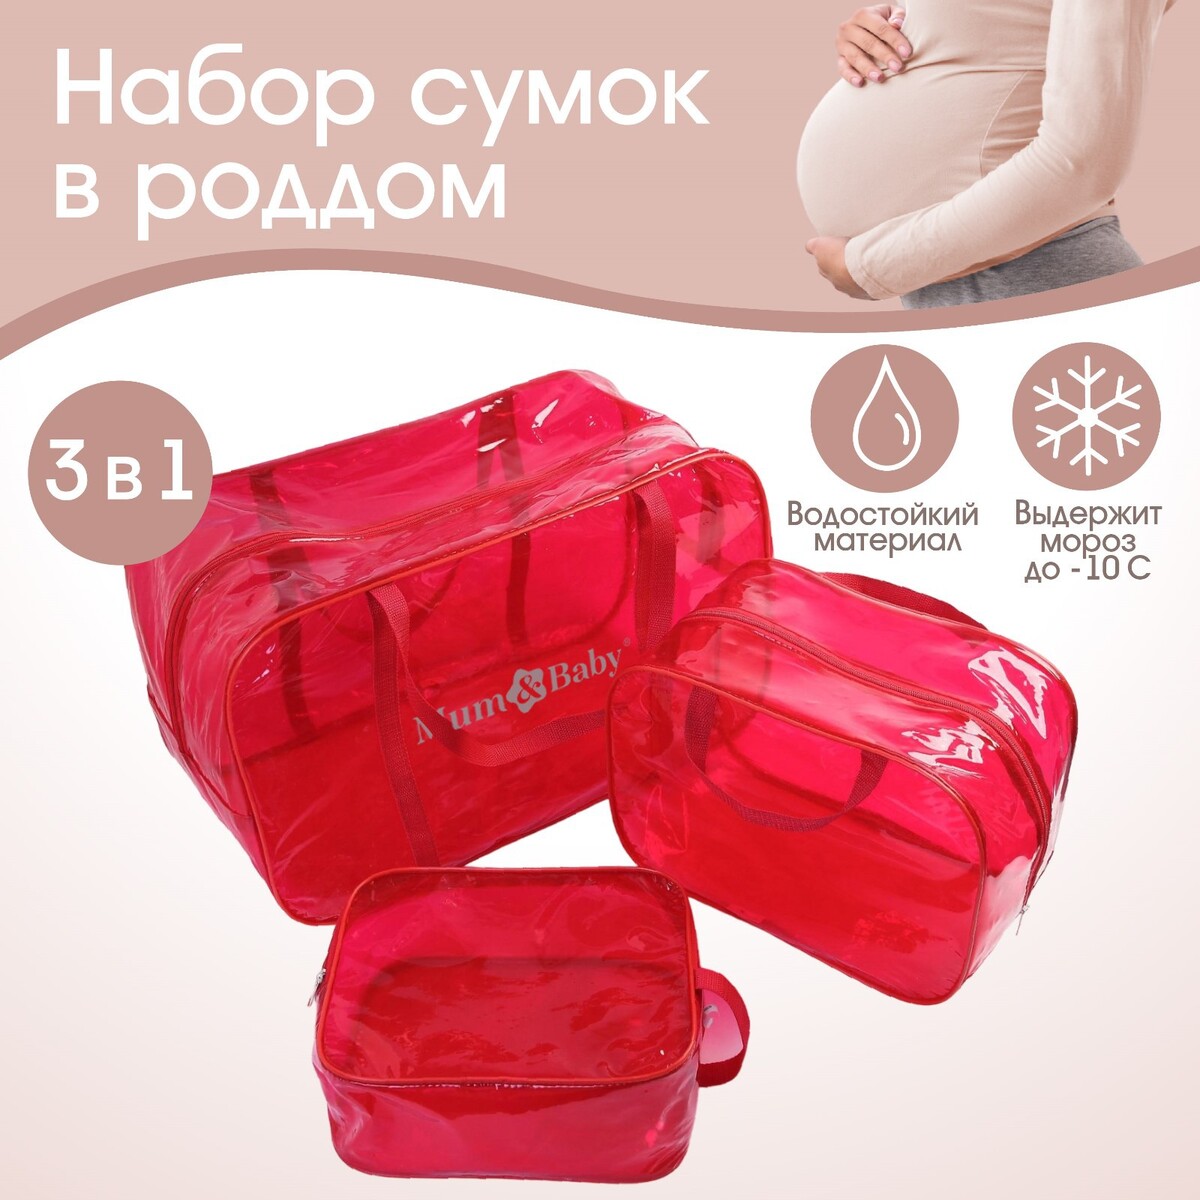 Набор сумок в роддом, 3 шт., цветной пвх, цвет красный Mum&Baby